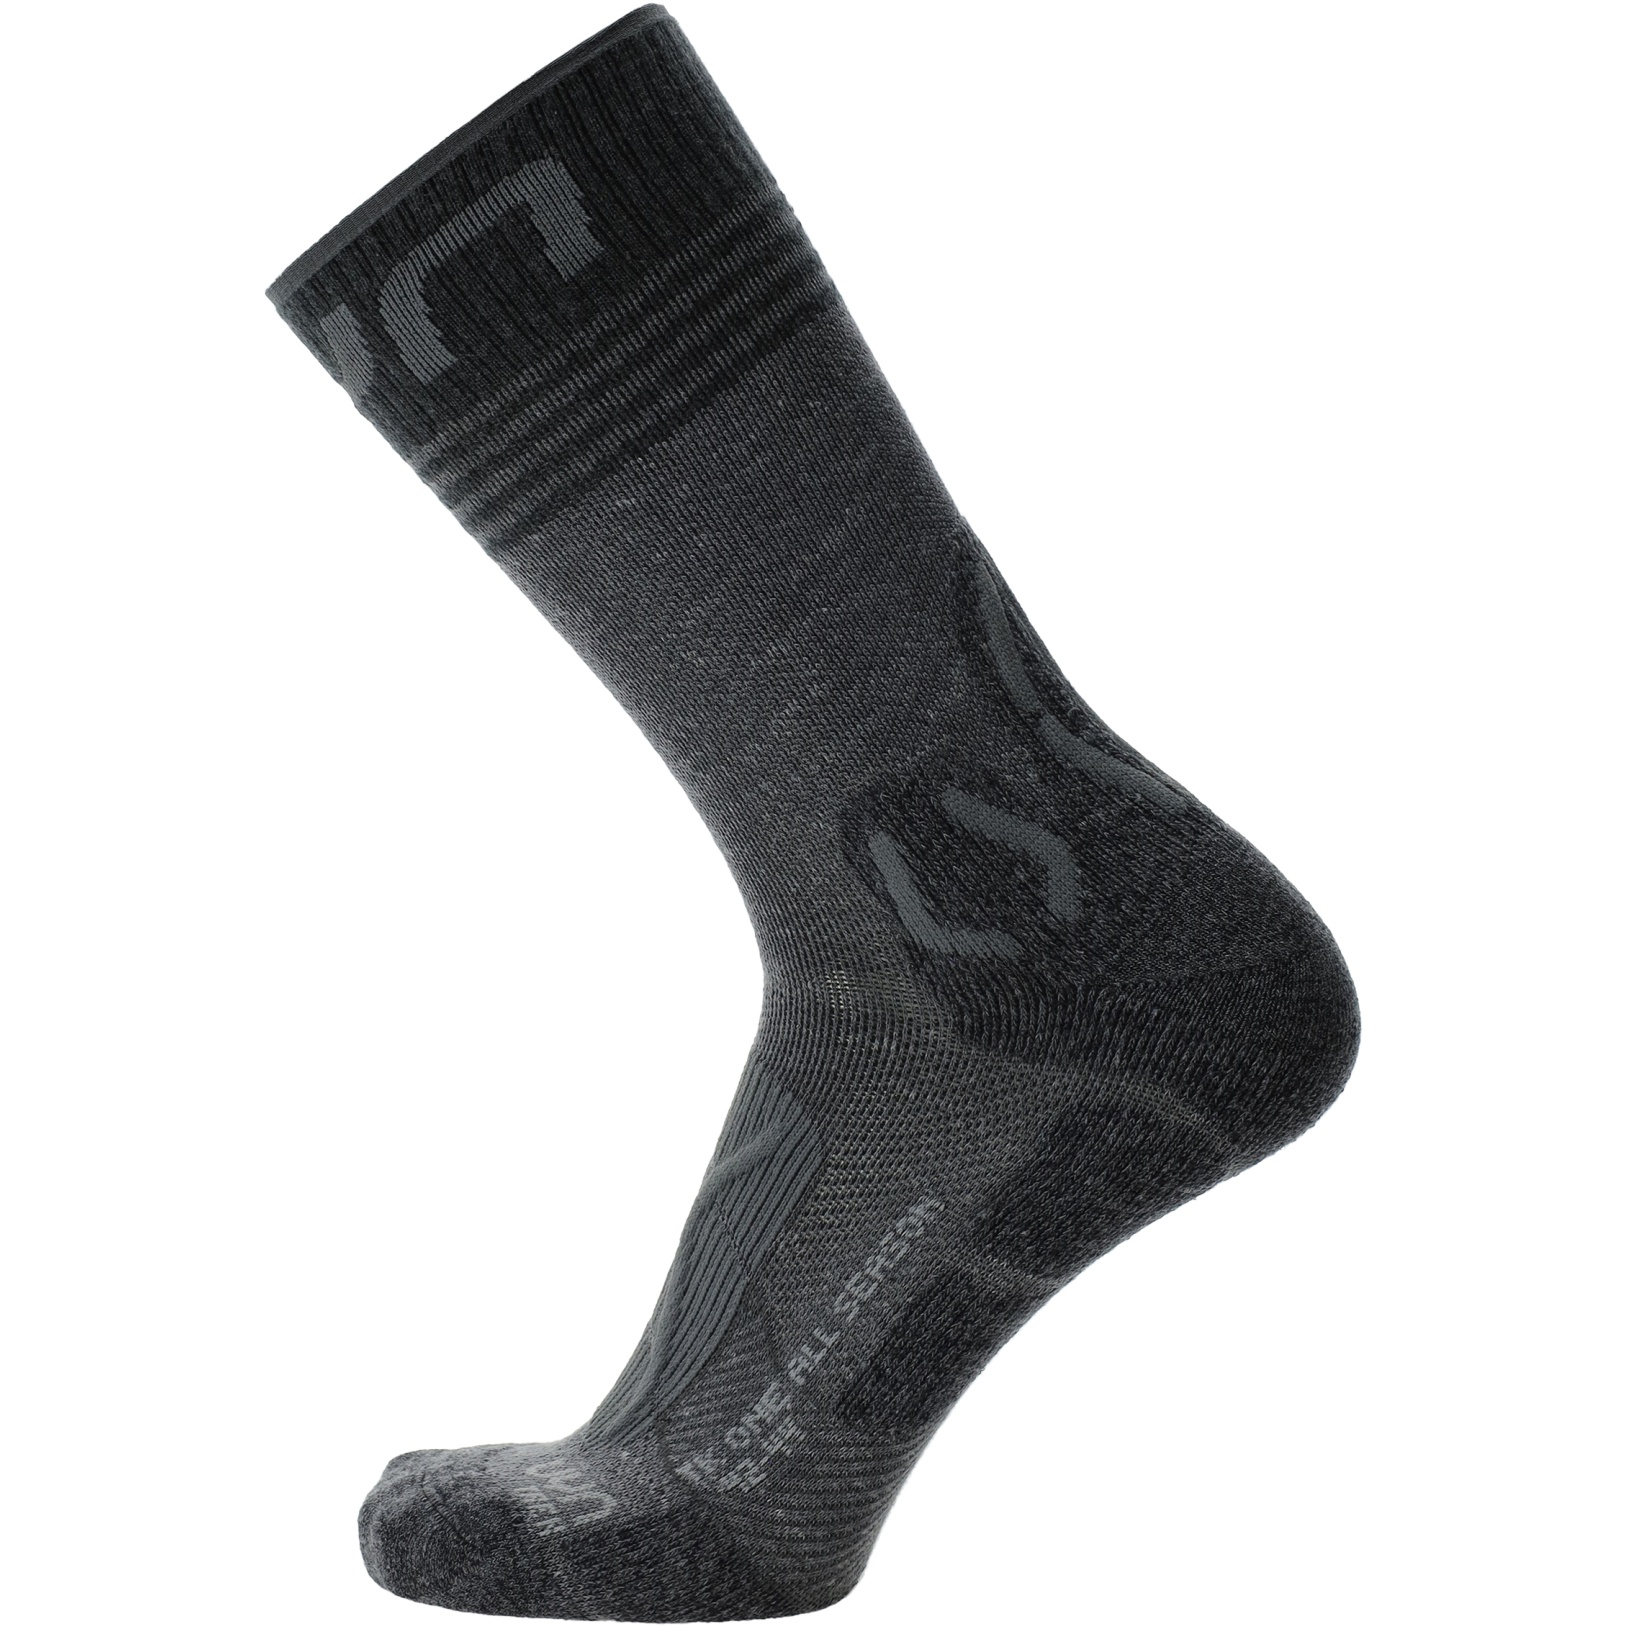 Produktbild von UYN Trekking One All Season Mid Socken Damen - Anthracite/Grey